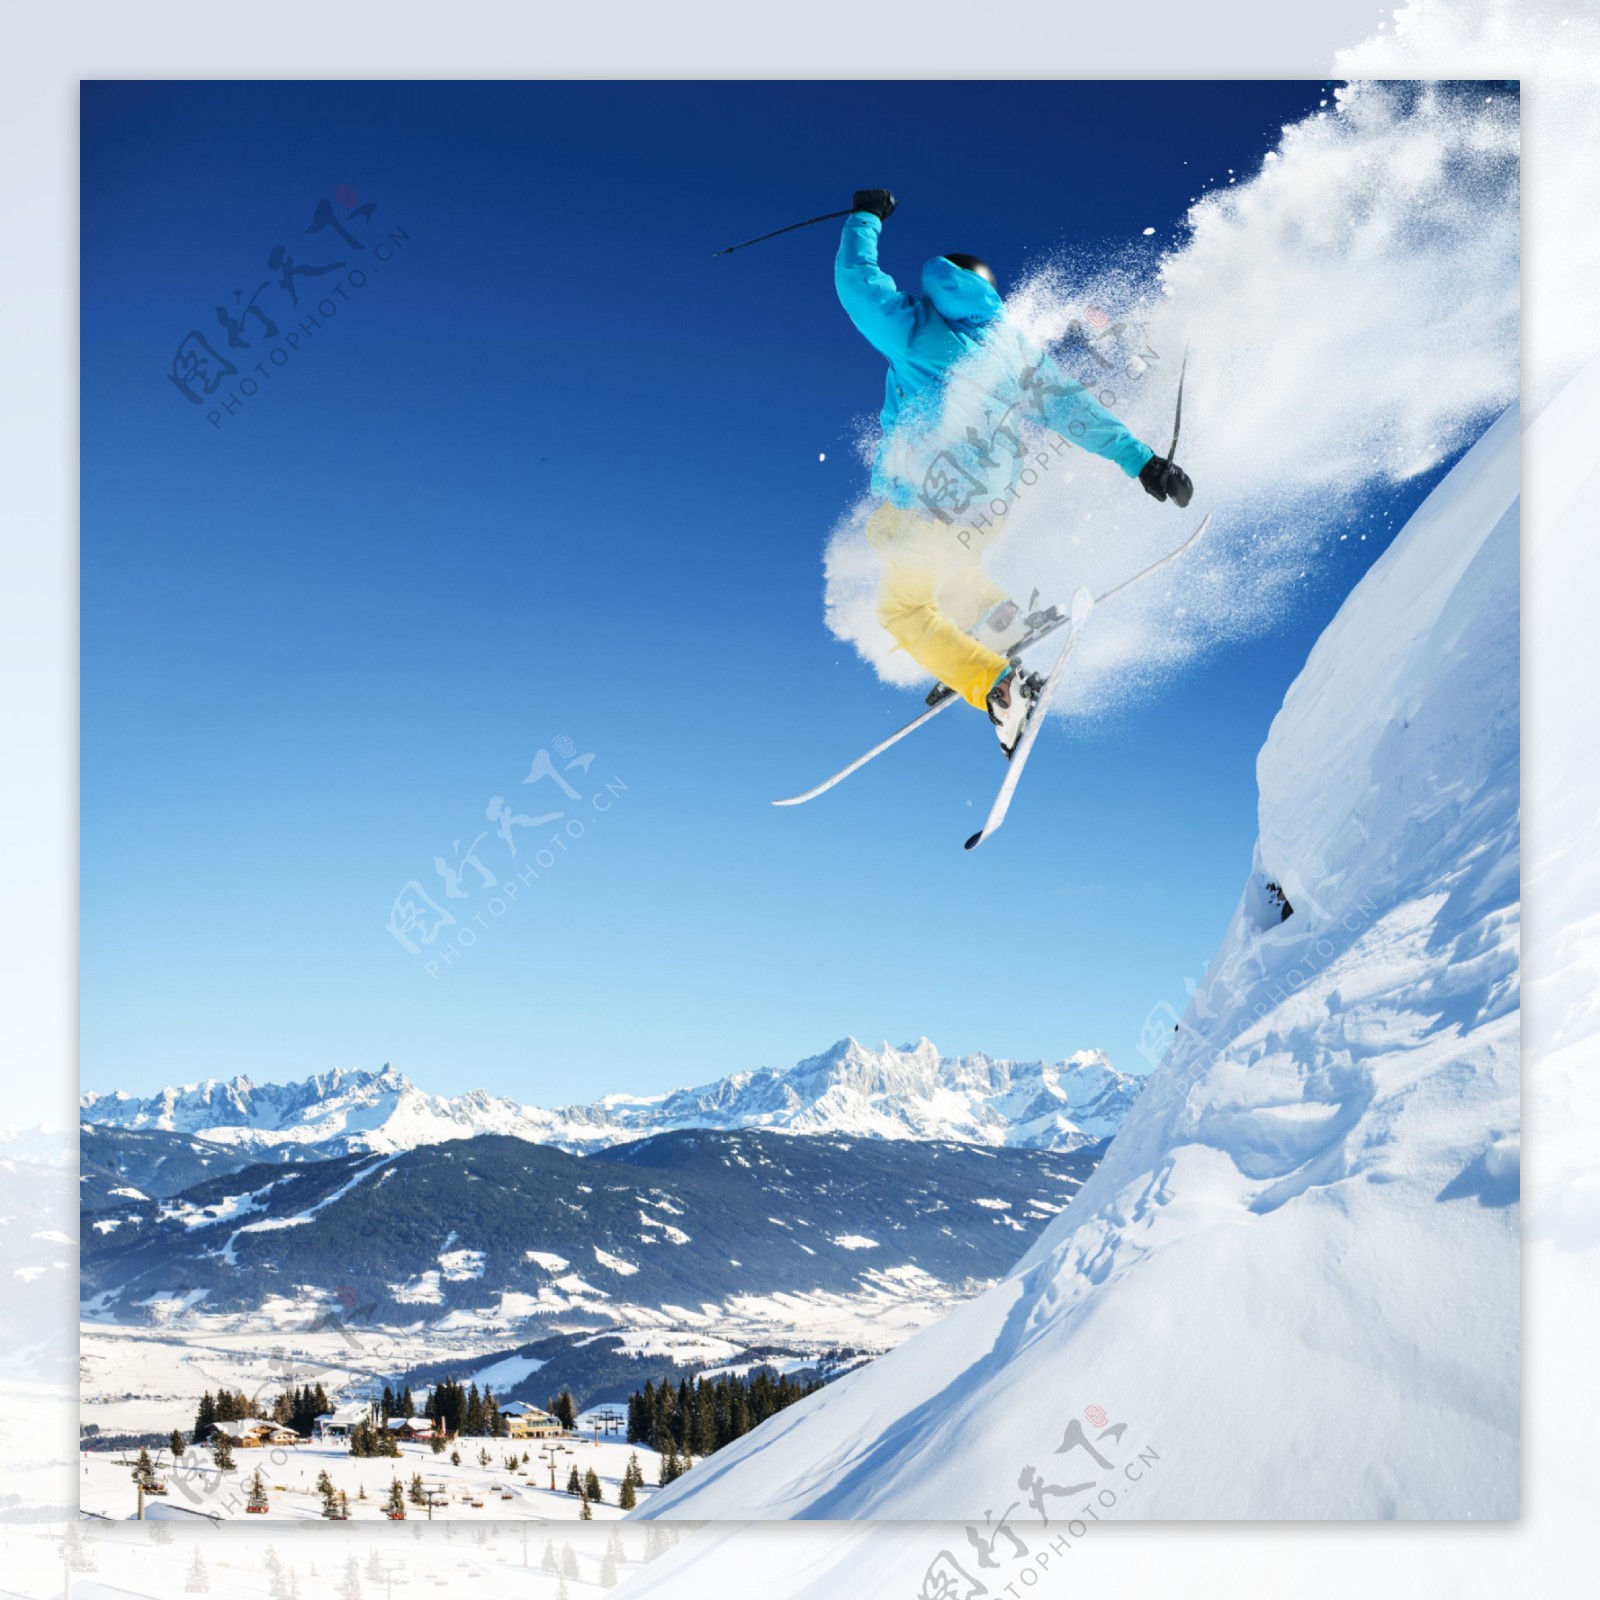 腾空跳跃的滑雪运动员